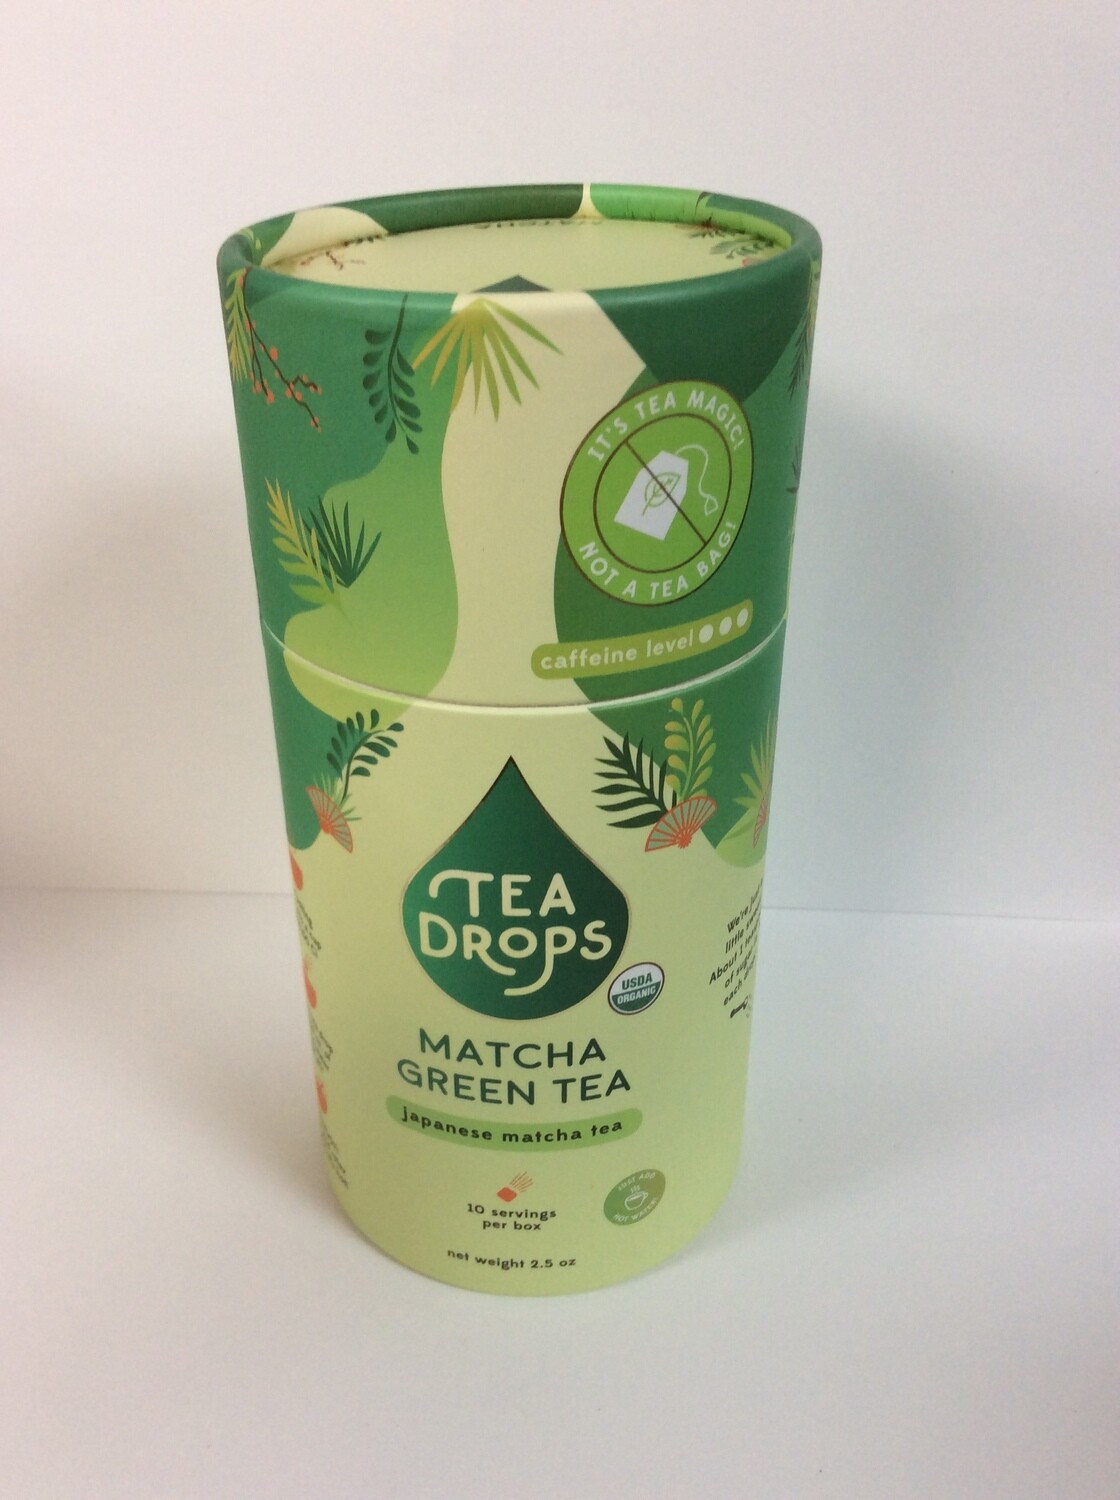 TEA DROPS MATCHA GREEN TEA 10CT